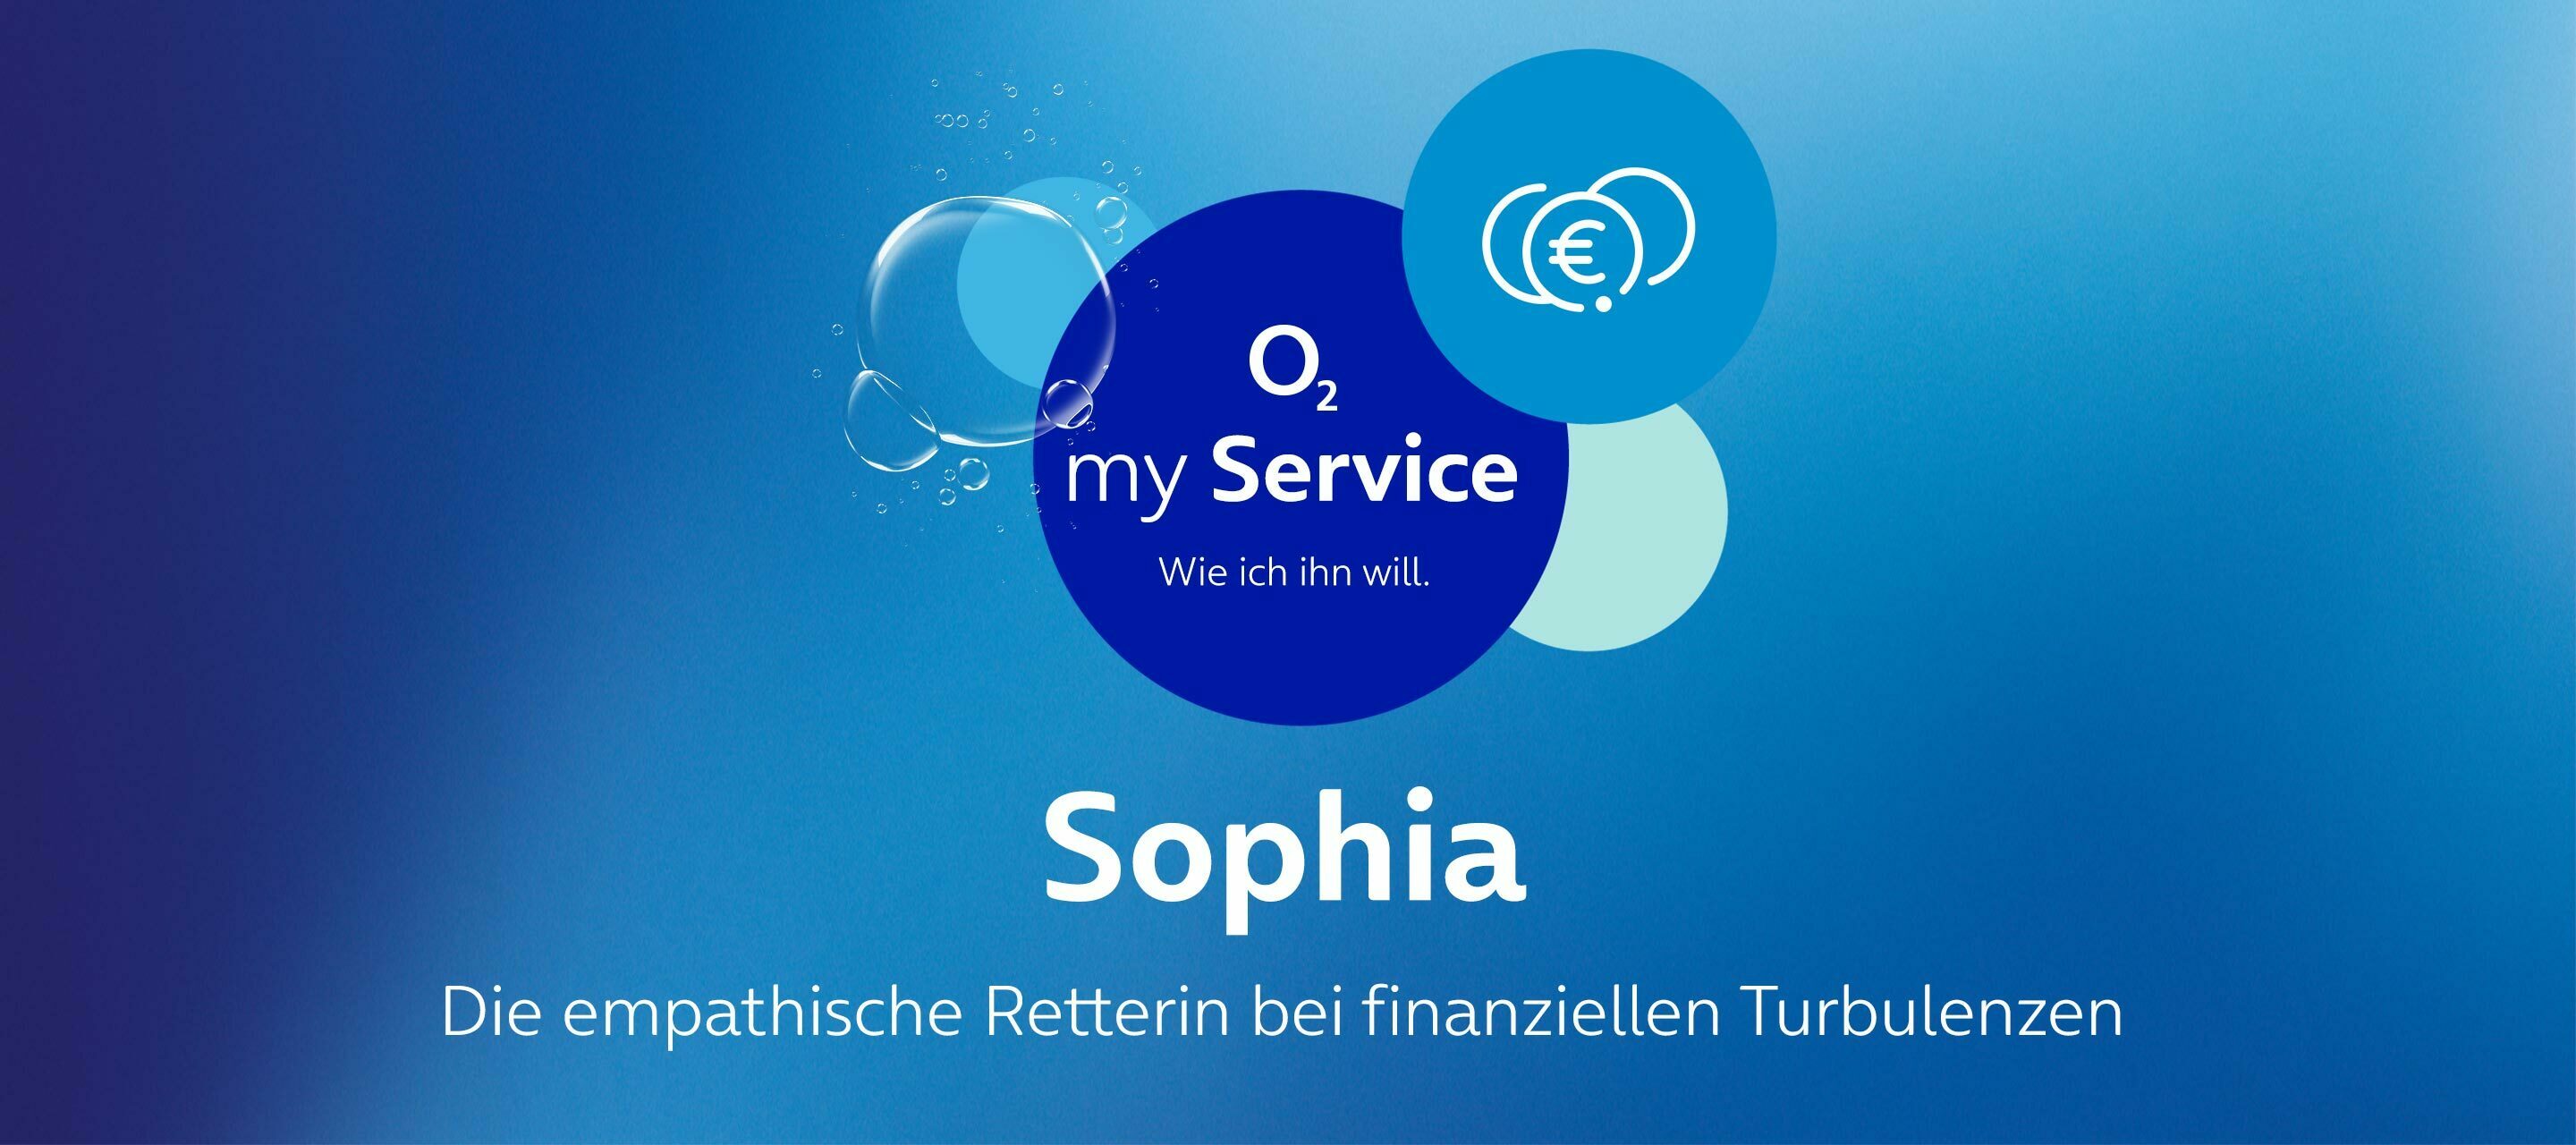 Die Gesichter hinter O₂ my Service – Sophia, die emphatische Retterin bei finanziellen Turbulenzen